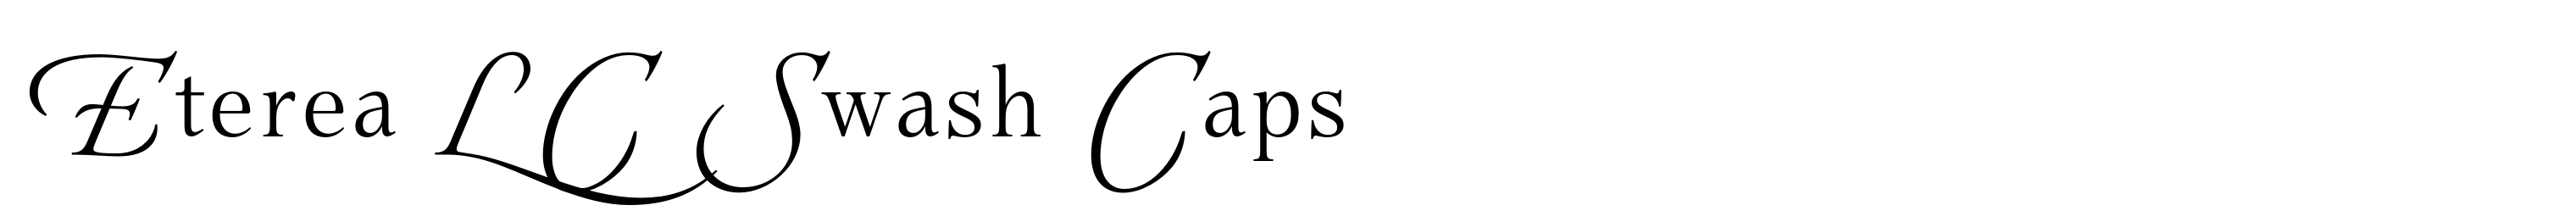 Eterea LC Swash Caps